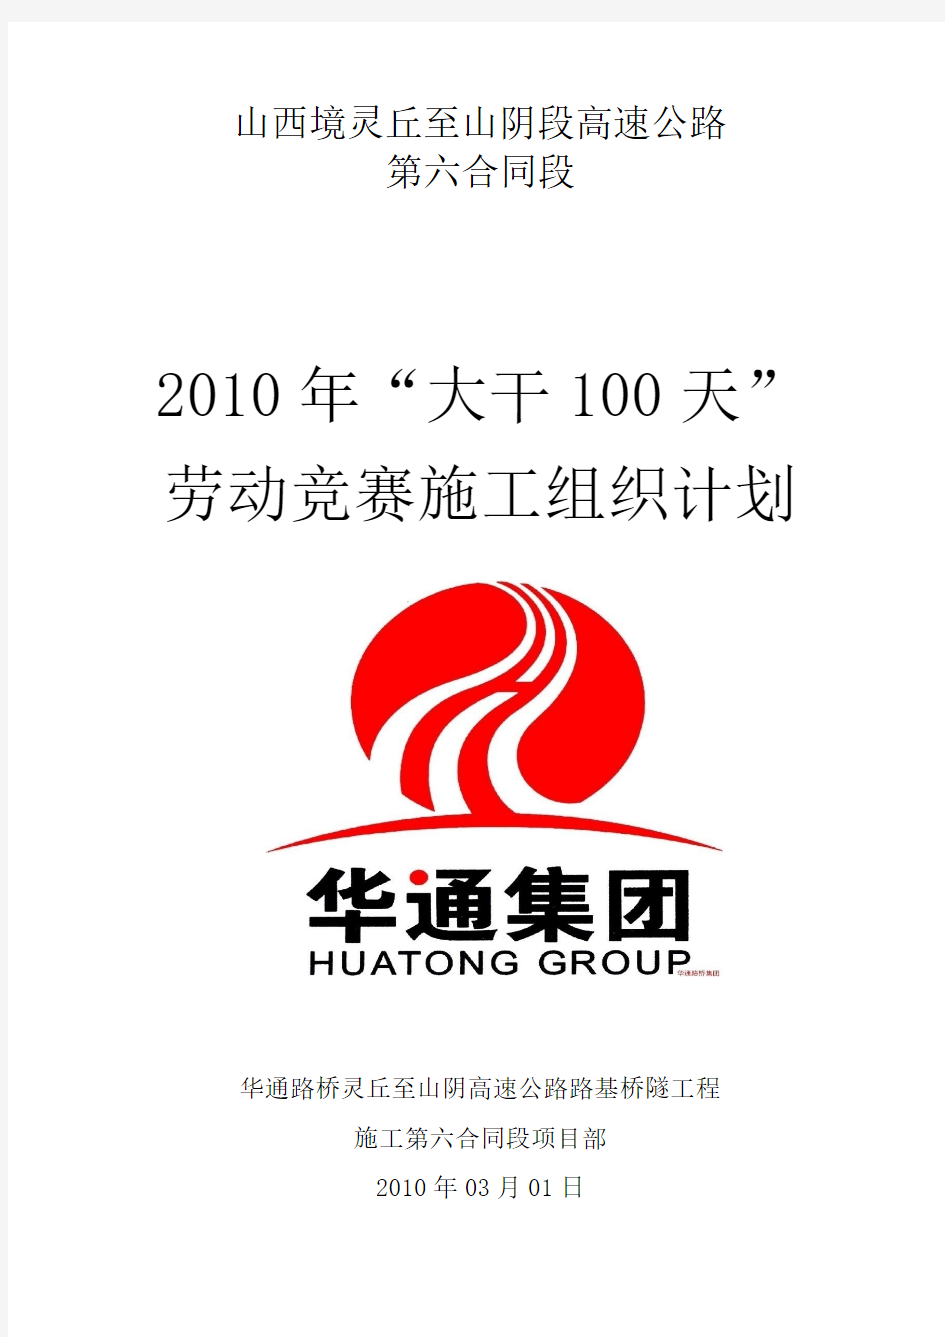 灵山高速公路六标2010年大干100天 (上报)